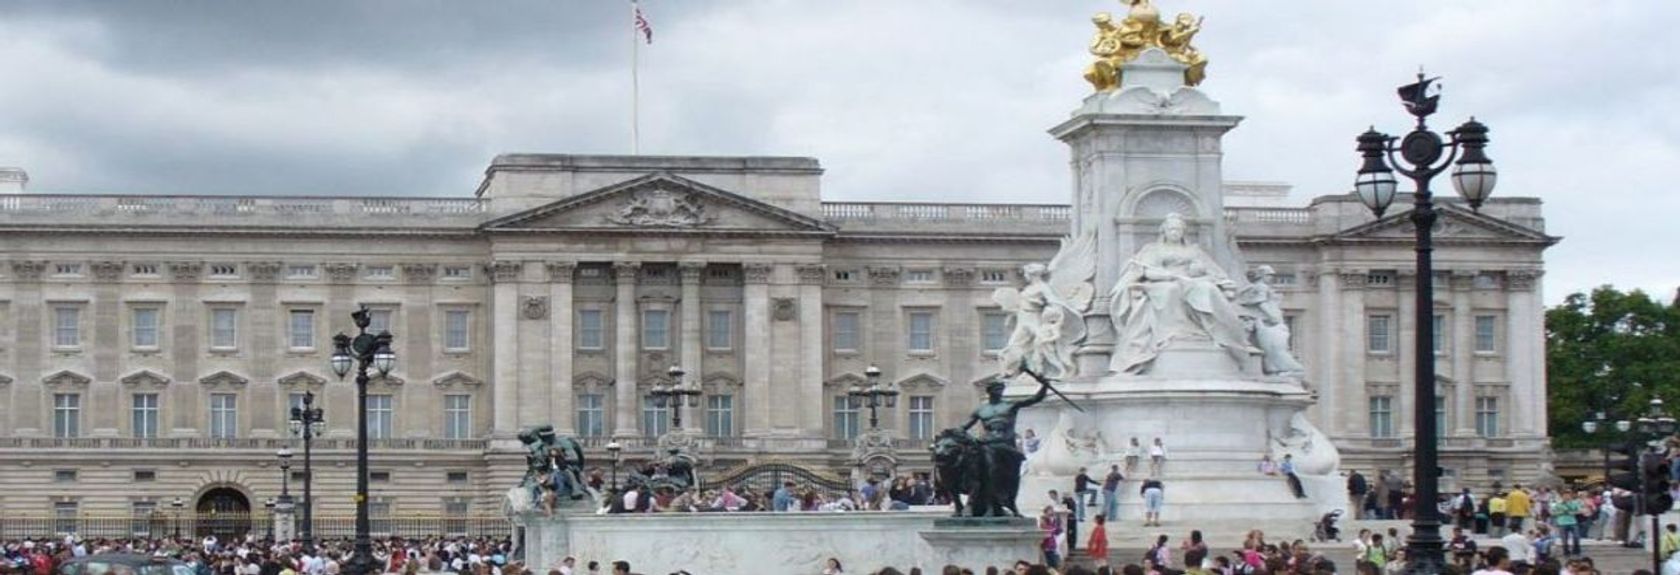 Visite a Rainha da Inglaterra e visite o impressionante Buckingham Palace no coração de Londres. Buckingham Palace foi construído em 1703 para John Sheffield, Duque de Buckingham. Em 1762 o Rei Jorge III comprou o enorme edifício e desde 1837 serve de residência para a família real, o primeiro monarca a ocupar permanentemente o palácio foi a Rainha Vitória. Buckingham Palace foi reconstruído várias vezes ao longo dos anos e compreende um total de cerca de 775 quartos e 78 banheiros espalhados por uma área de nada menos que 77.000 metros quadrados. A fachada do palácio não tem menos de 108 metros de largura e o edifício tem 120 metros de profundidade e 24 metros de altura. O palácio tem 1514 portas e 760 janelas que são limpas a cada seis semanas. O palácio também possui um jardim real com uma área de 40 hectares.